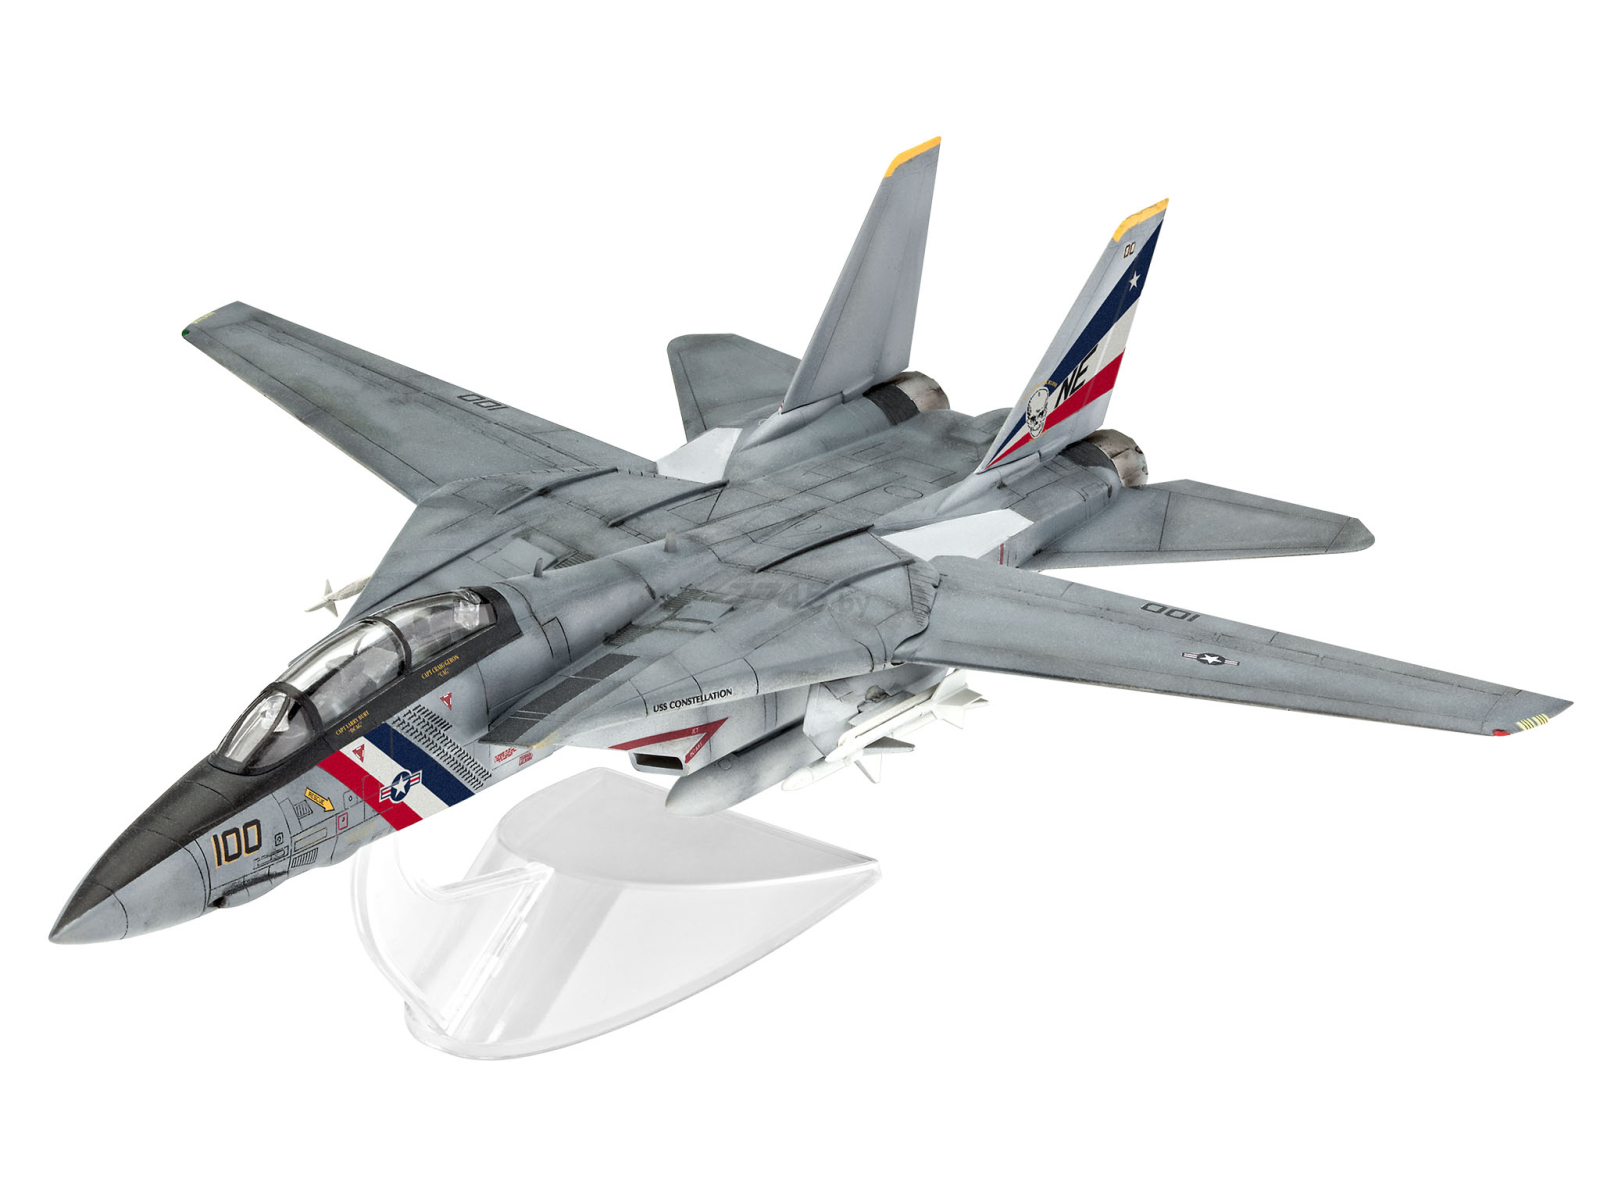 Сборная модель REVELL Палубный истребитель F-14D Super Tomcat 1:100 (3950)